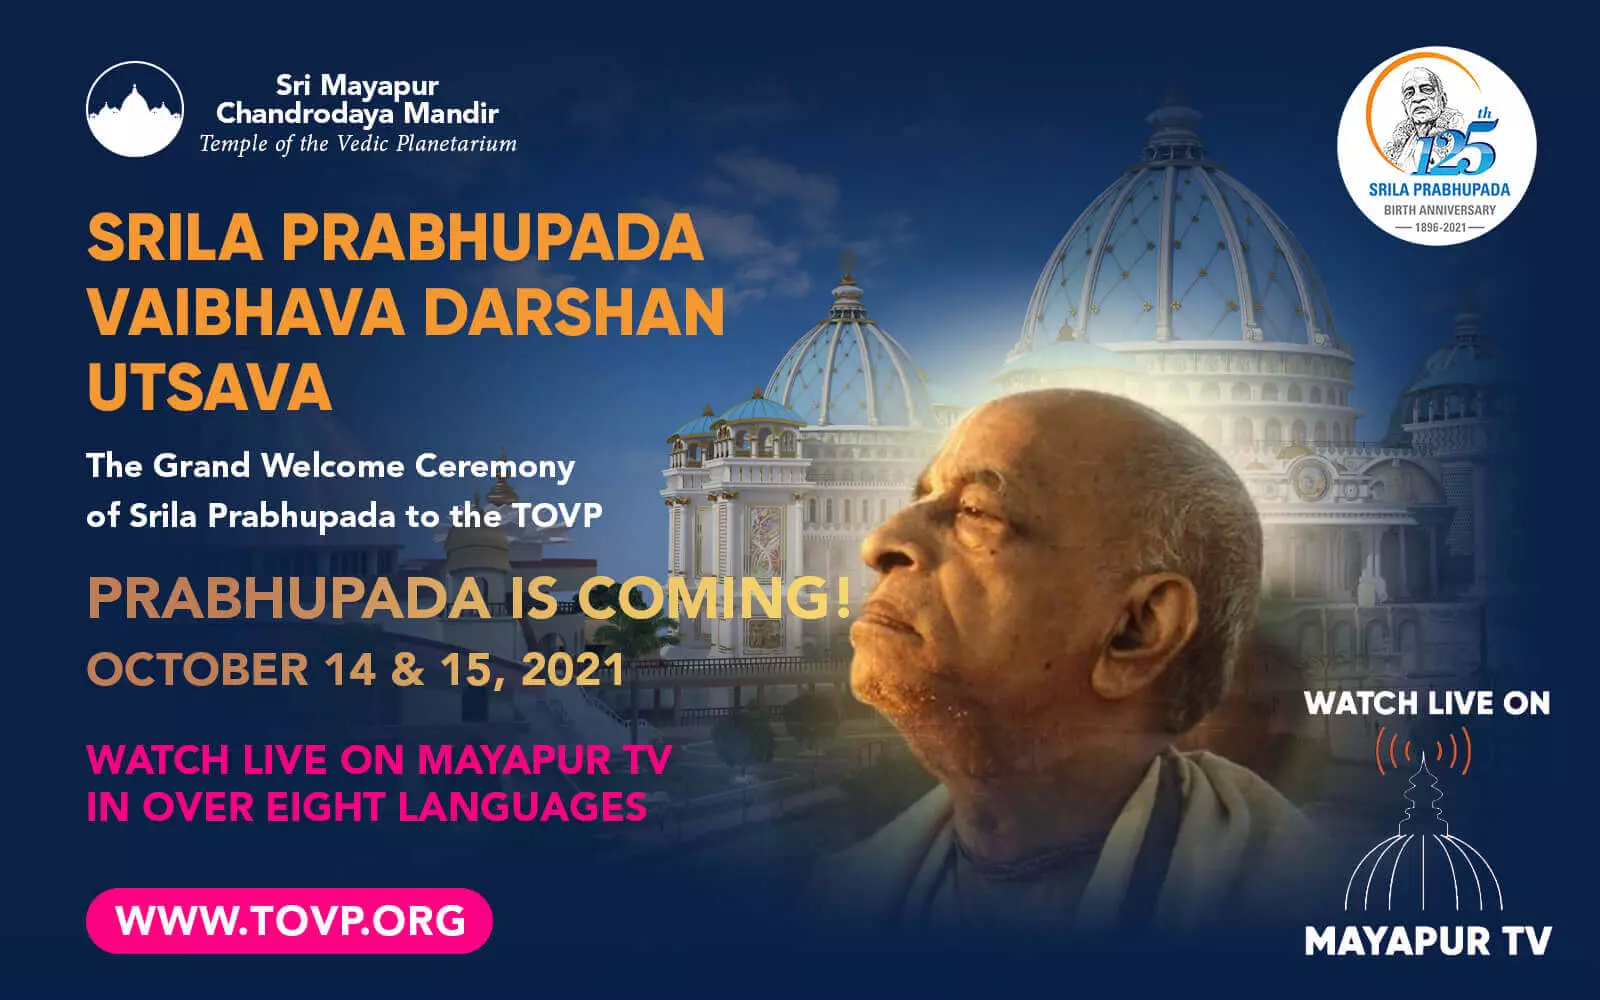 ¡PRABHUPADA VIENE AL TOVP! Míralo en vivo en Mayapur TV, 14 y 15 de octubre